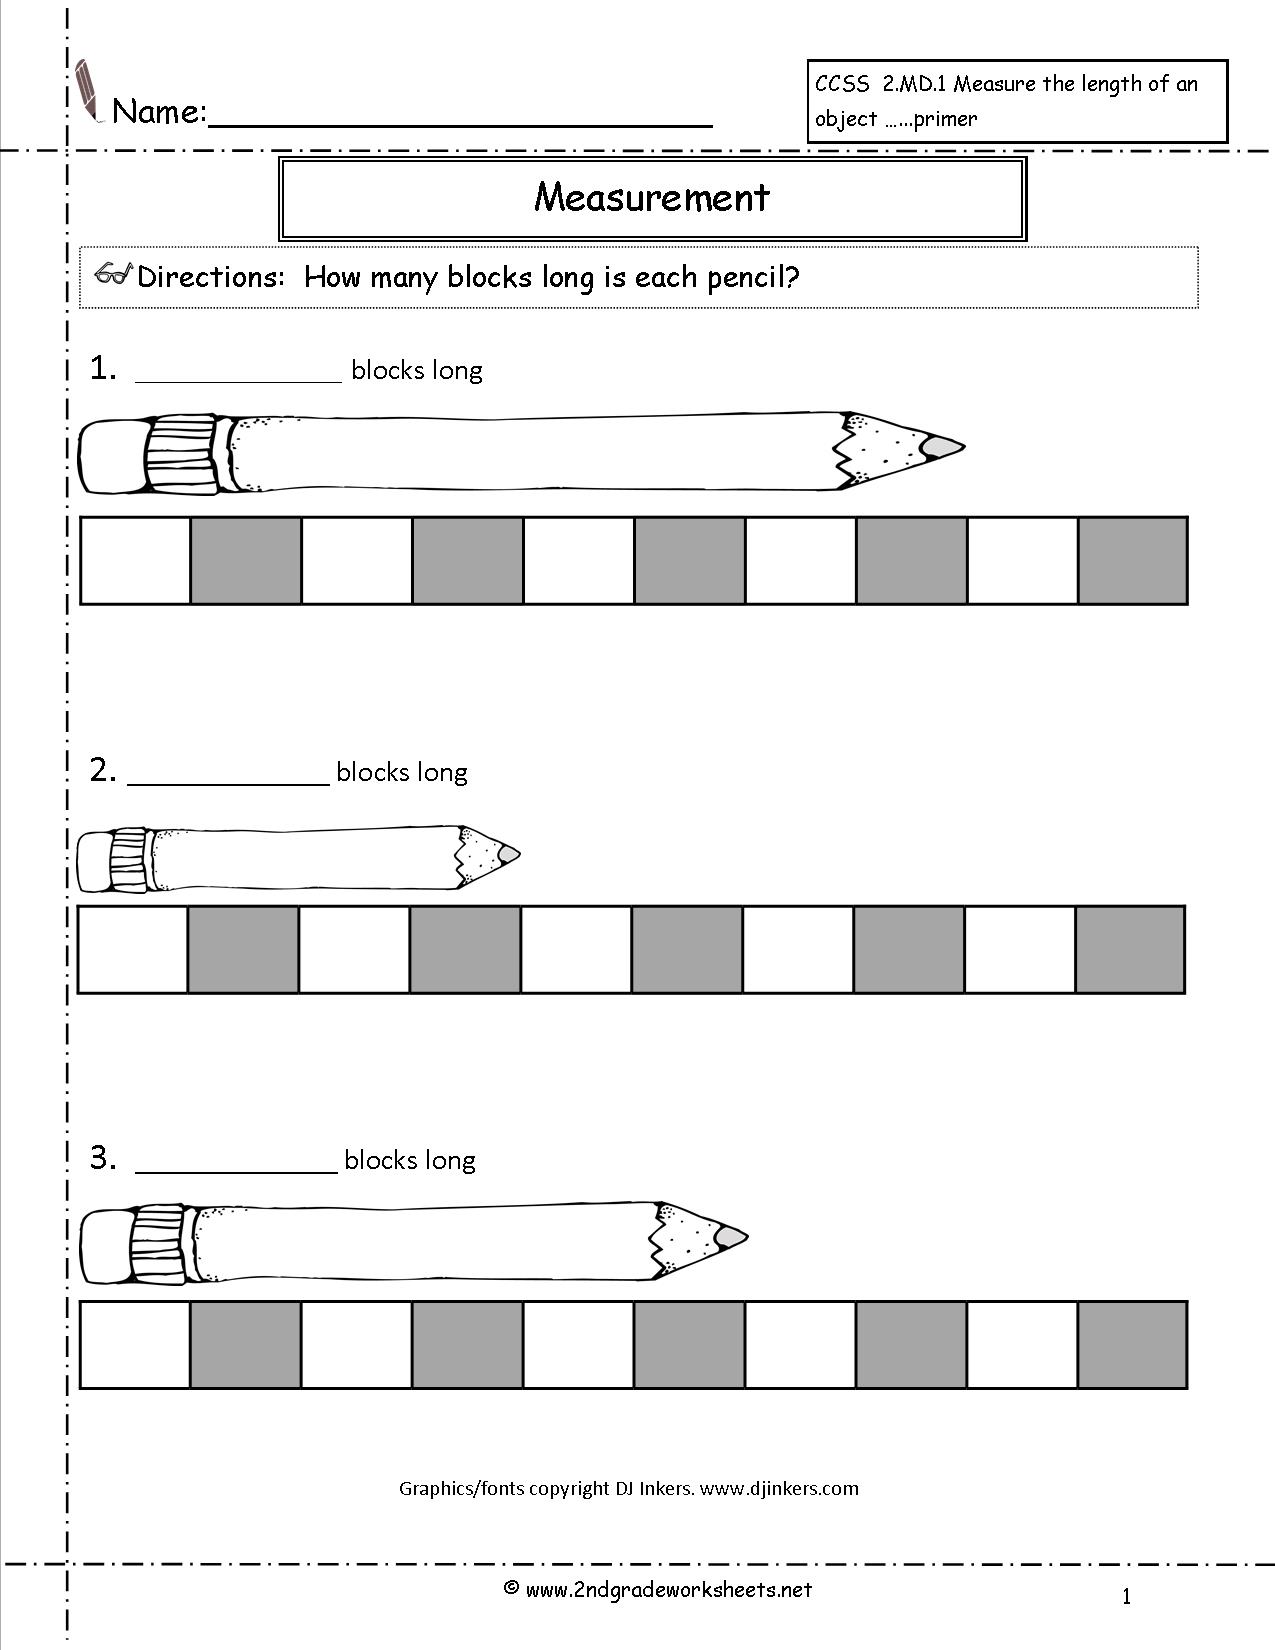 16 Best Images of 1st Grade Measurement Worksheets - Non-Standard ...